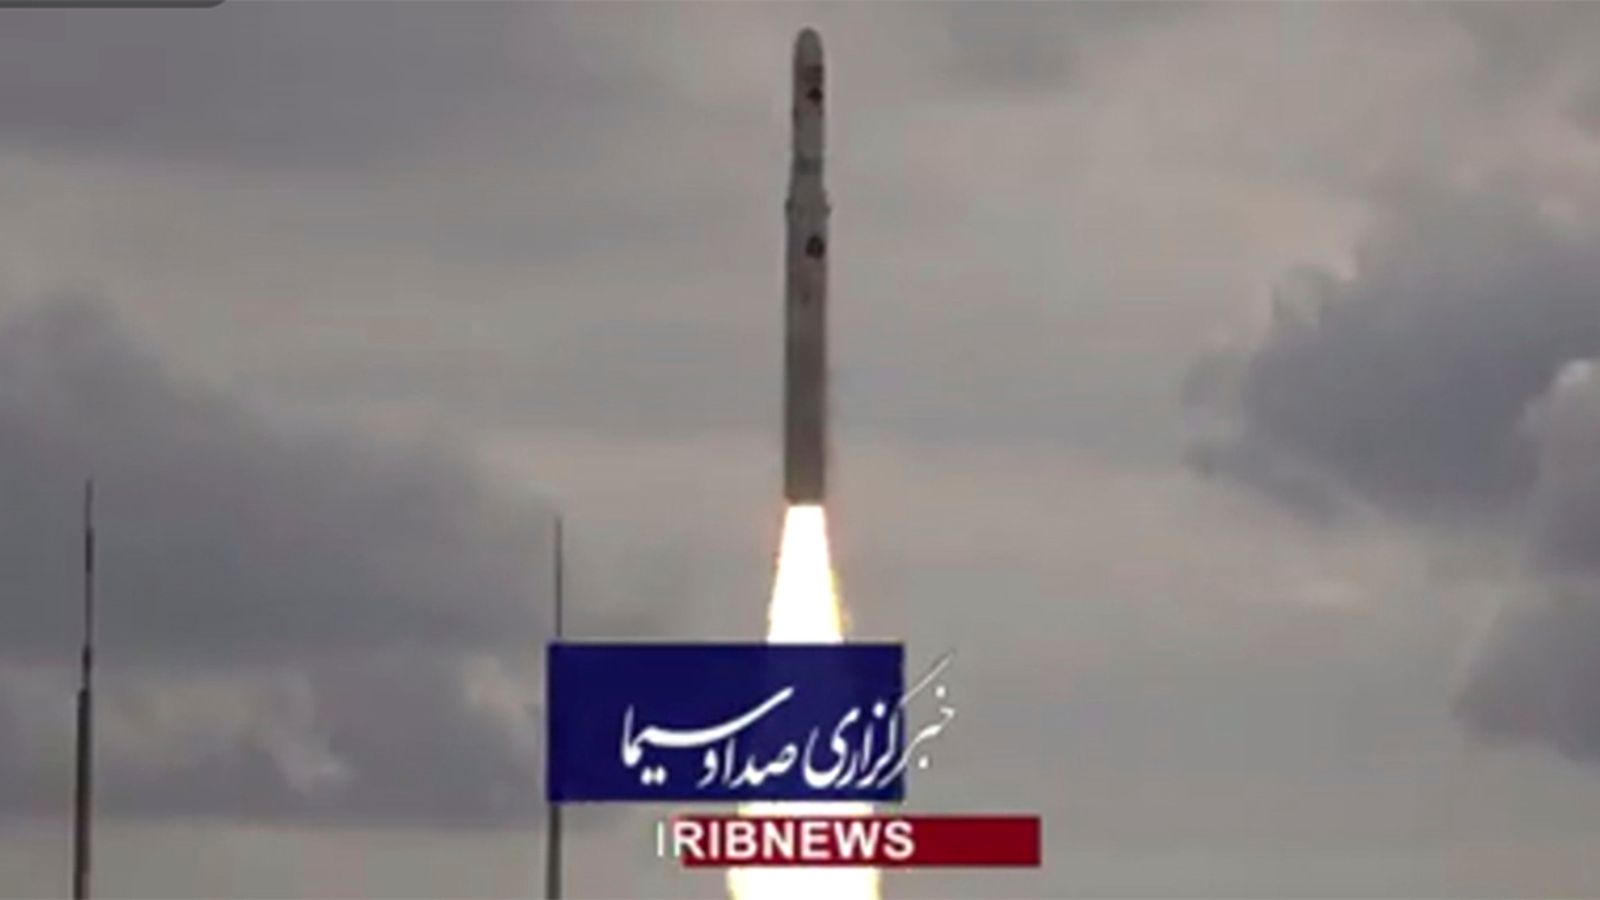 Der Iran testet eine neue satellitentragende Rakete in Bewegung.  US-Anrufe „nicht hilfreich und destabilisierend“ |  Weltnachrichten